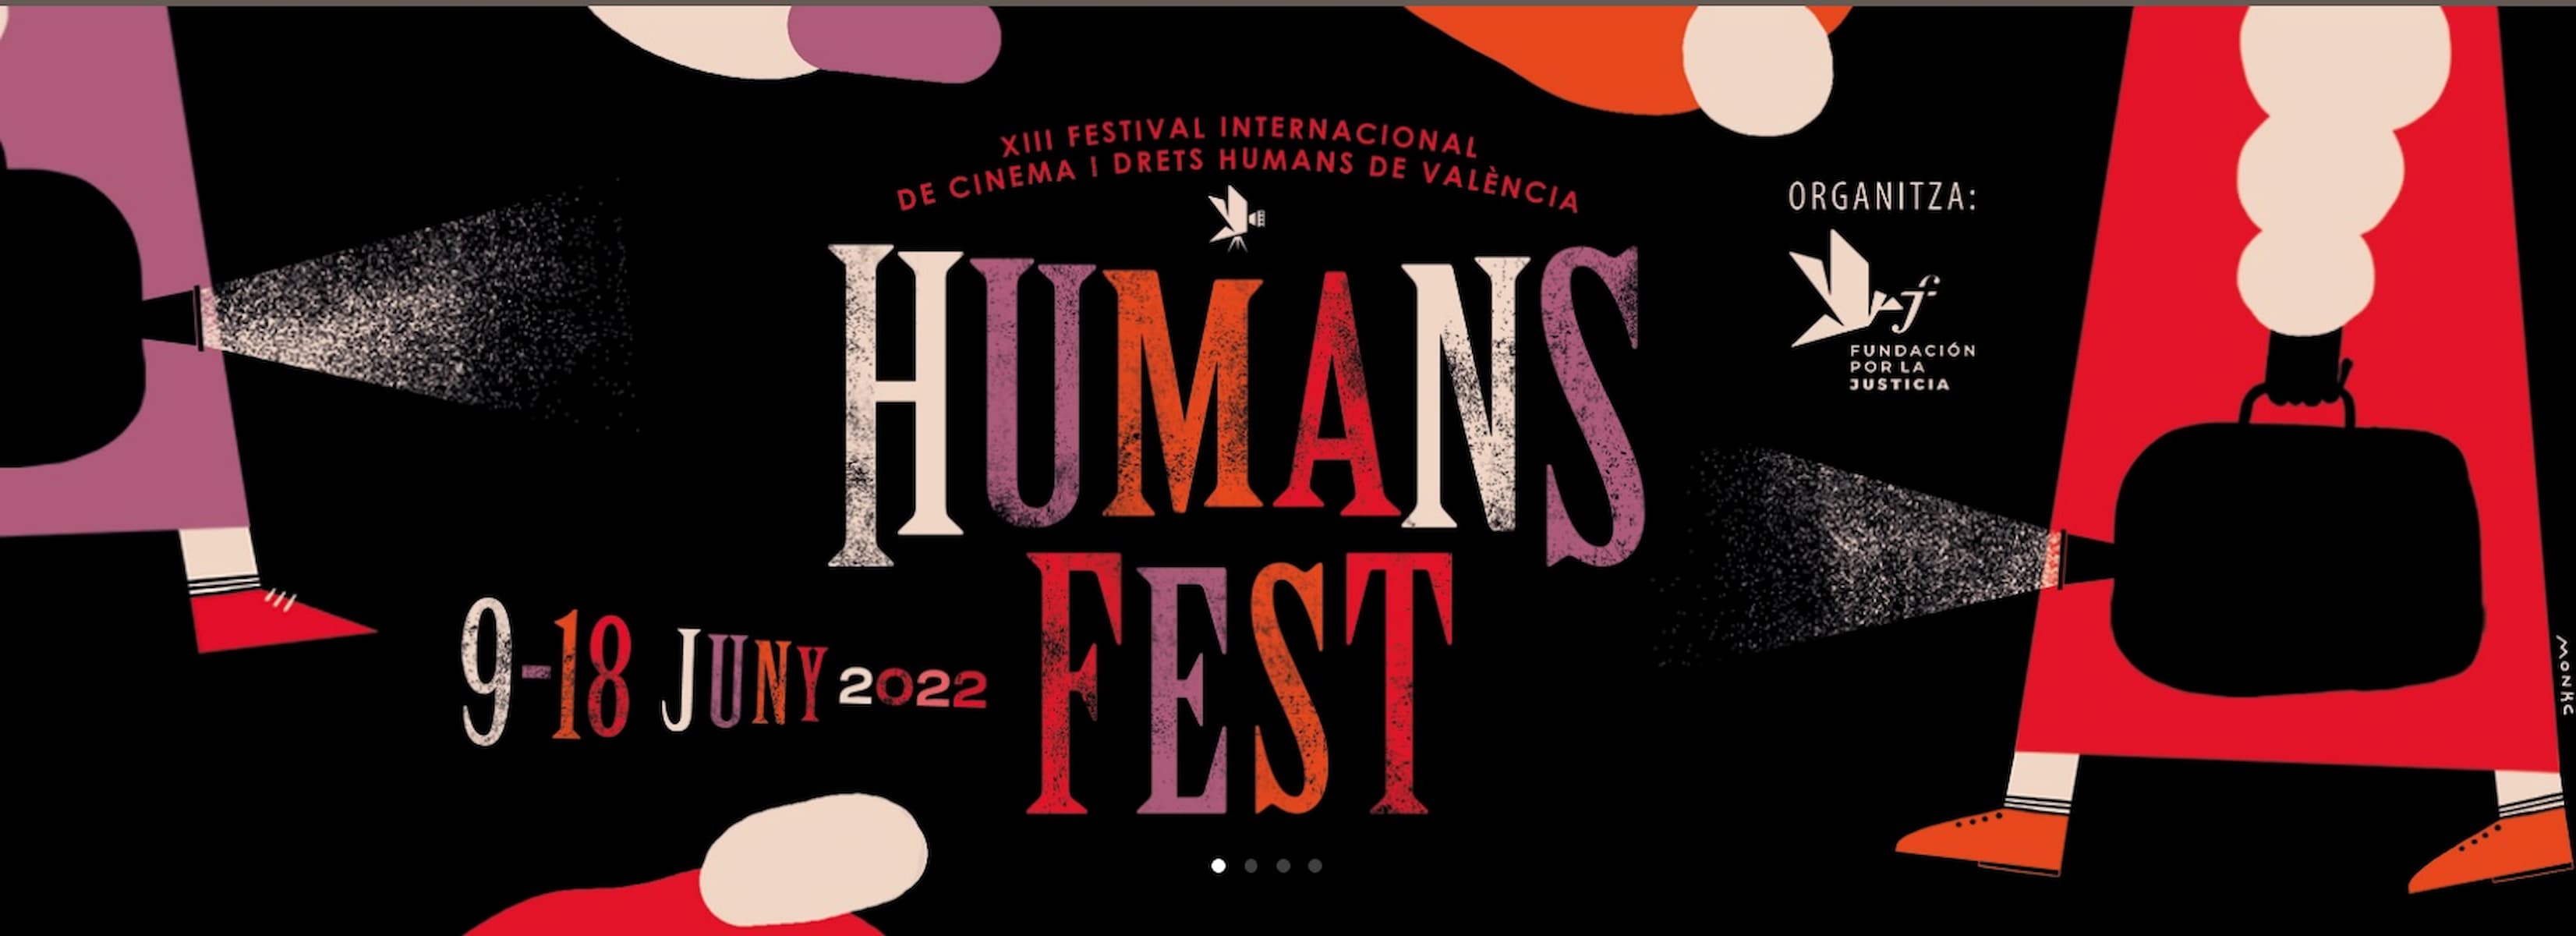 Humans Fest